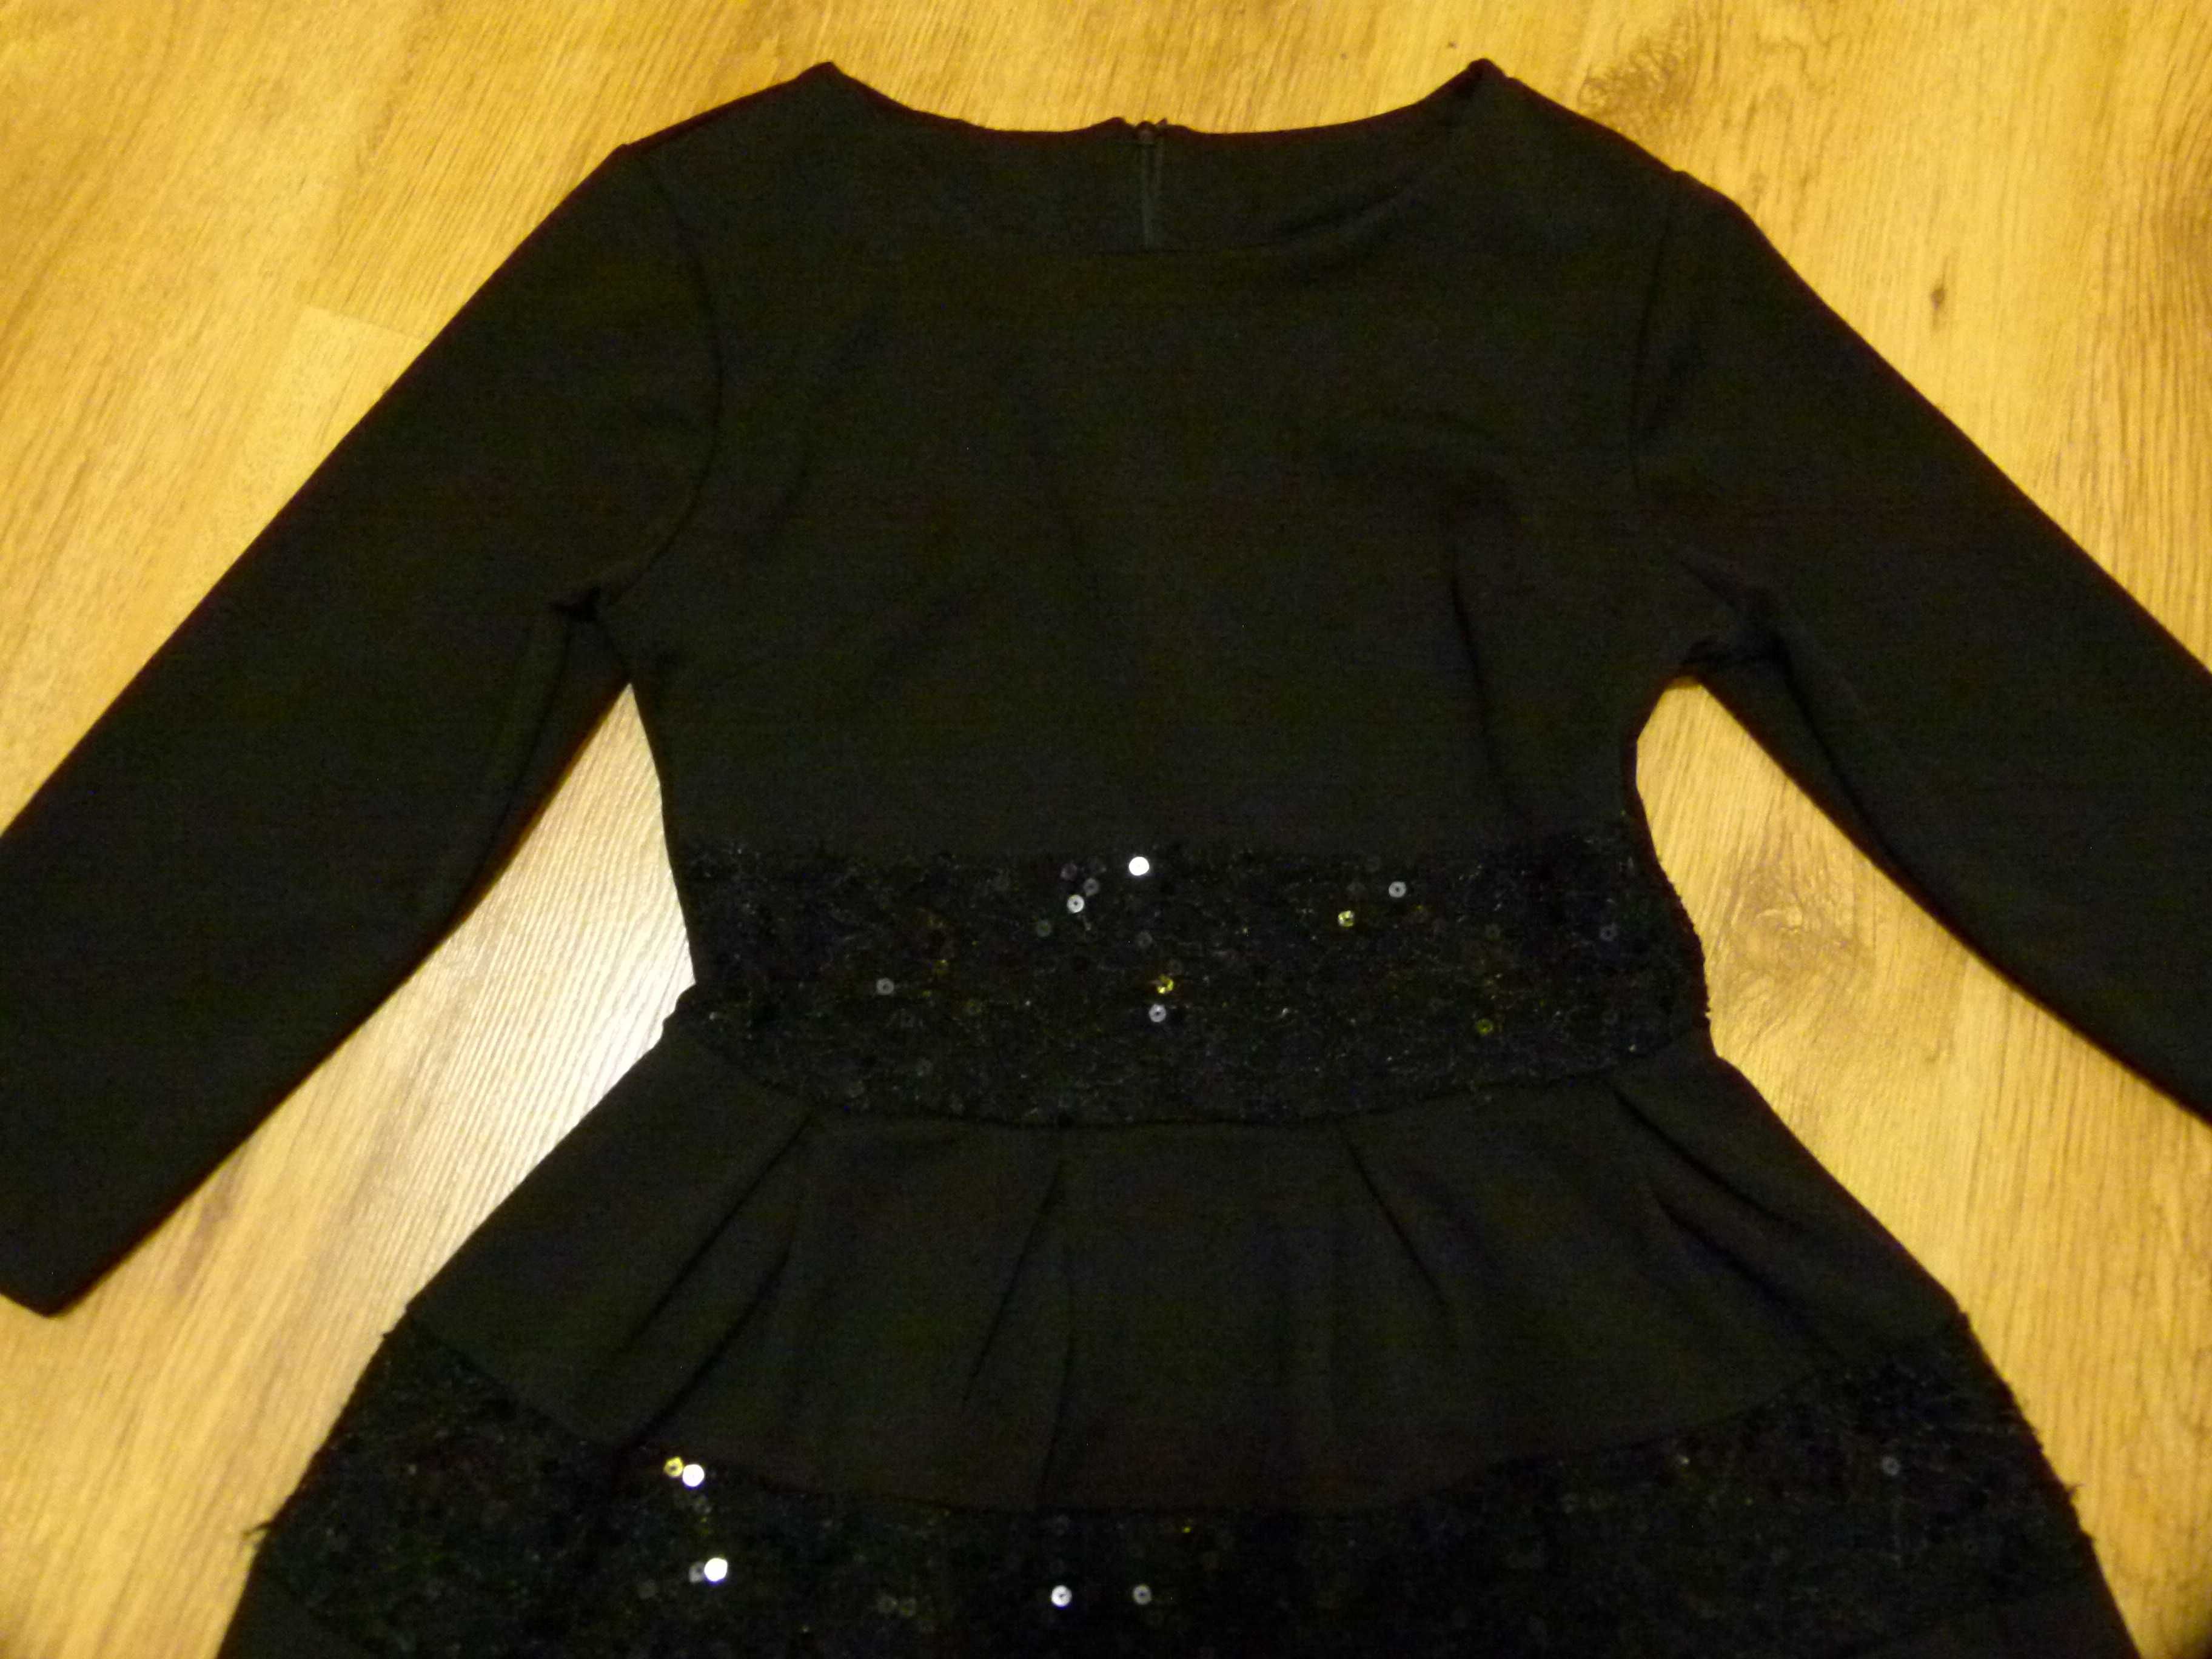 sukienka czarna kloszowana koronki cekiny wizytowa rozm 34 XS